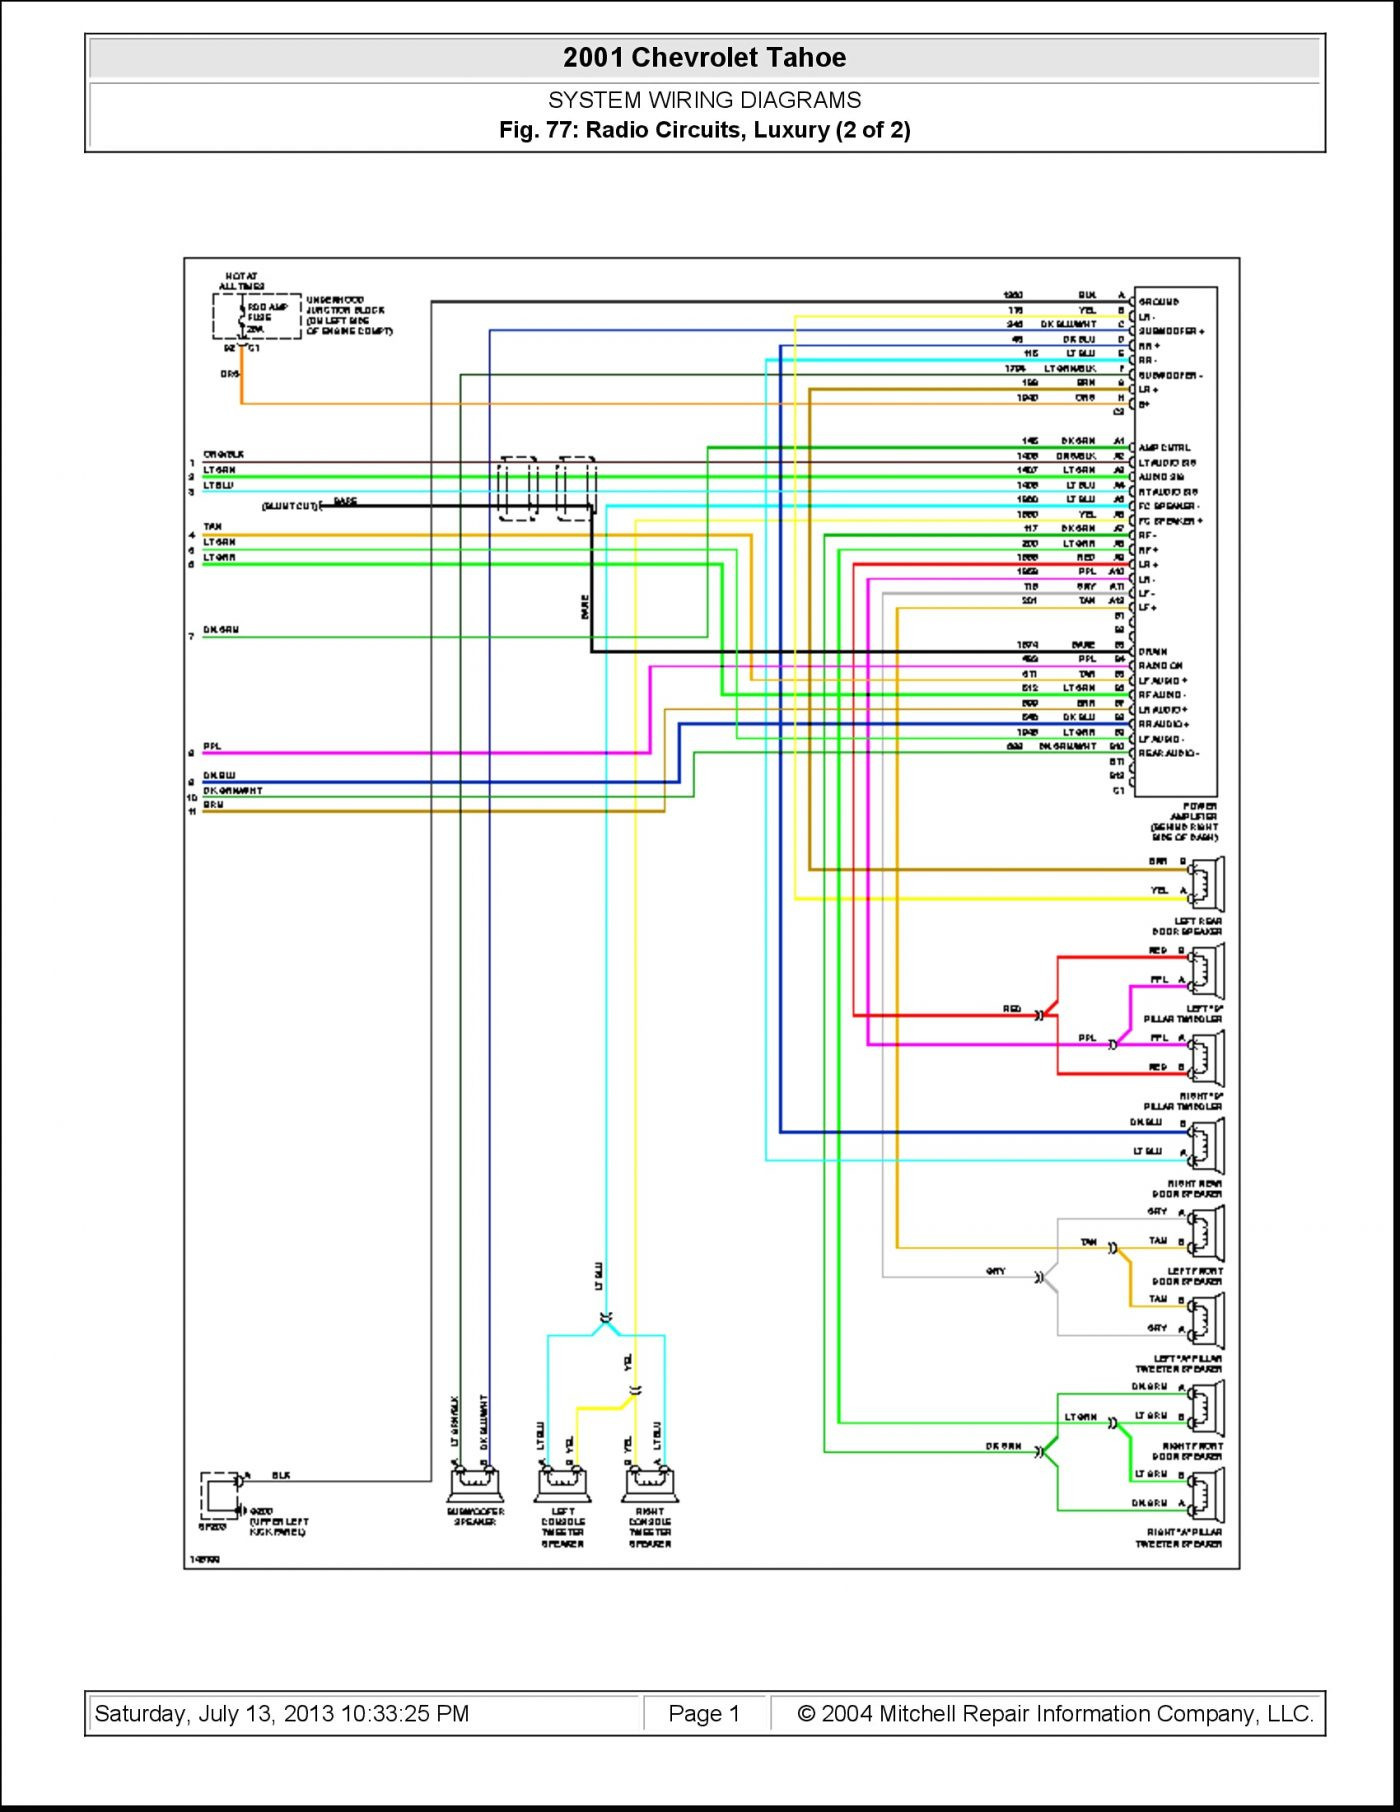 Subaru Wiring Diagram Color Codes Example Of Subaru Wiring Diagram - Wiring Diagram Color Codes